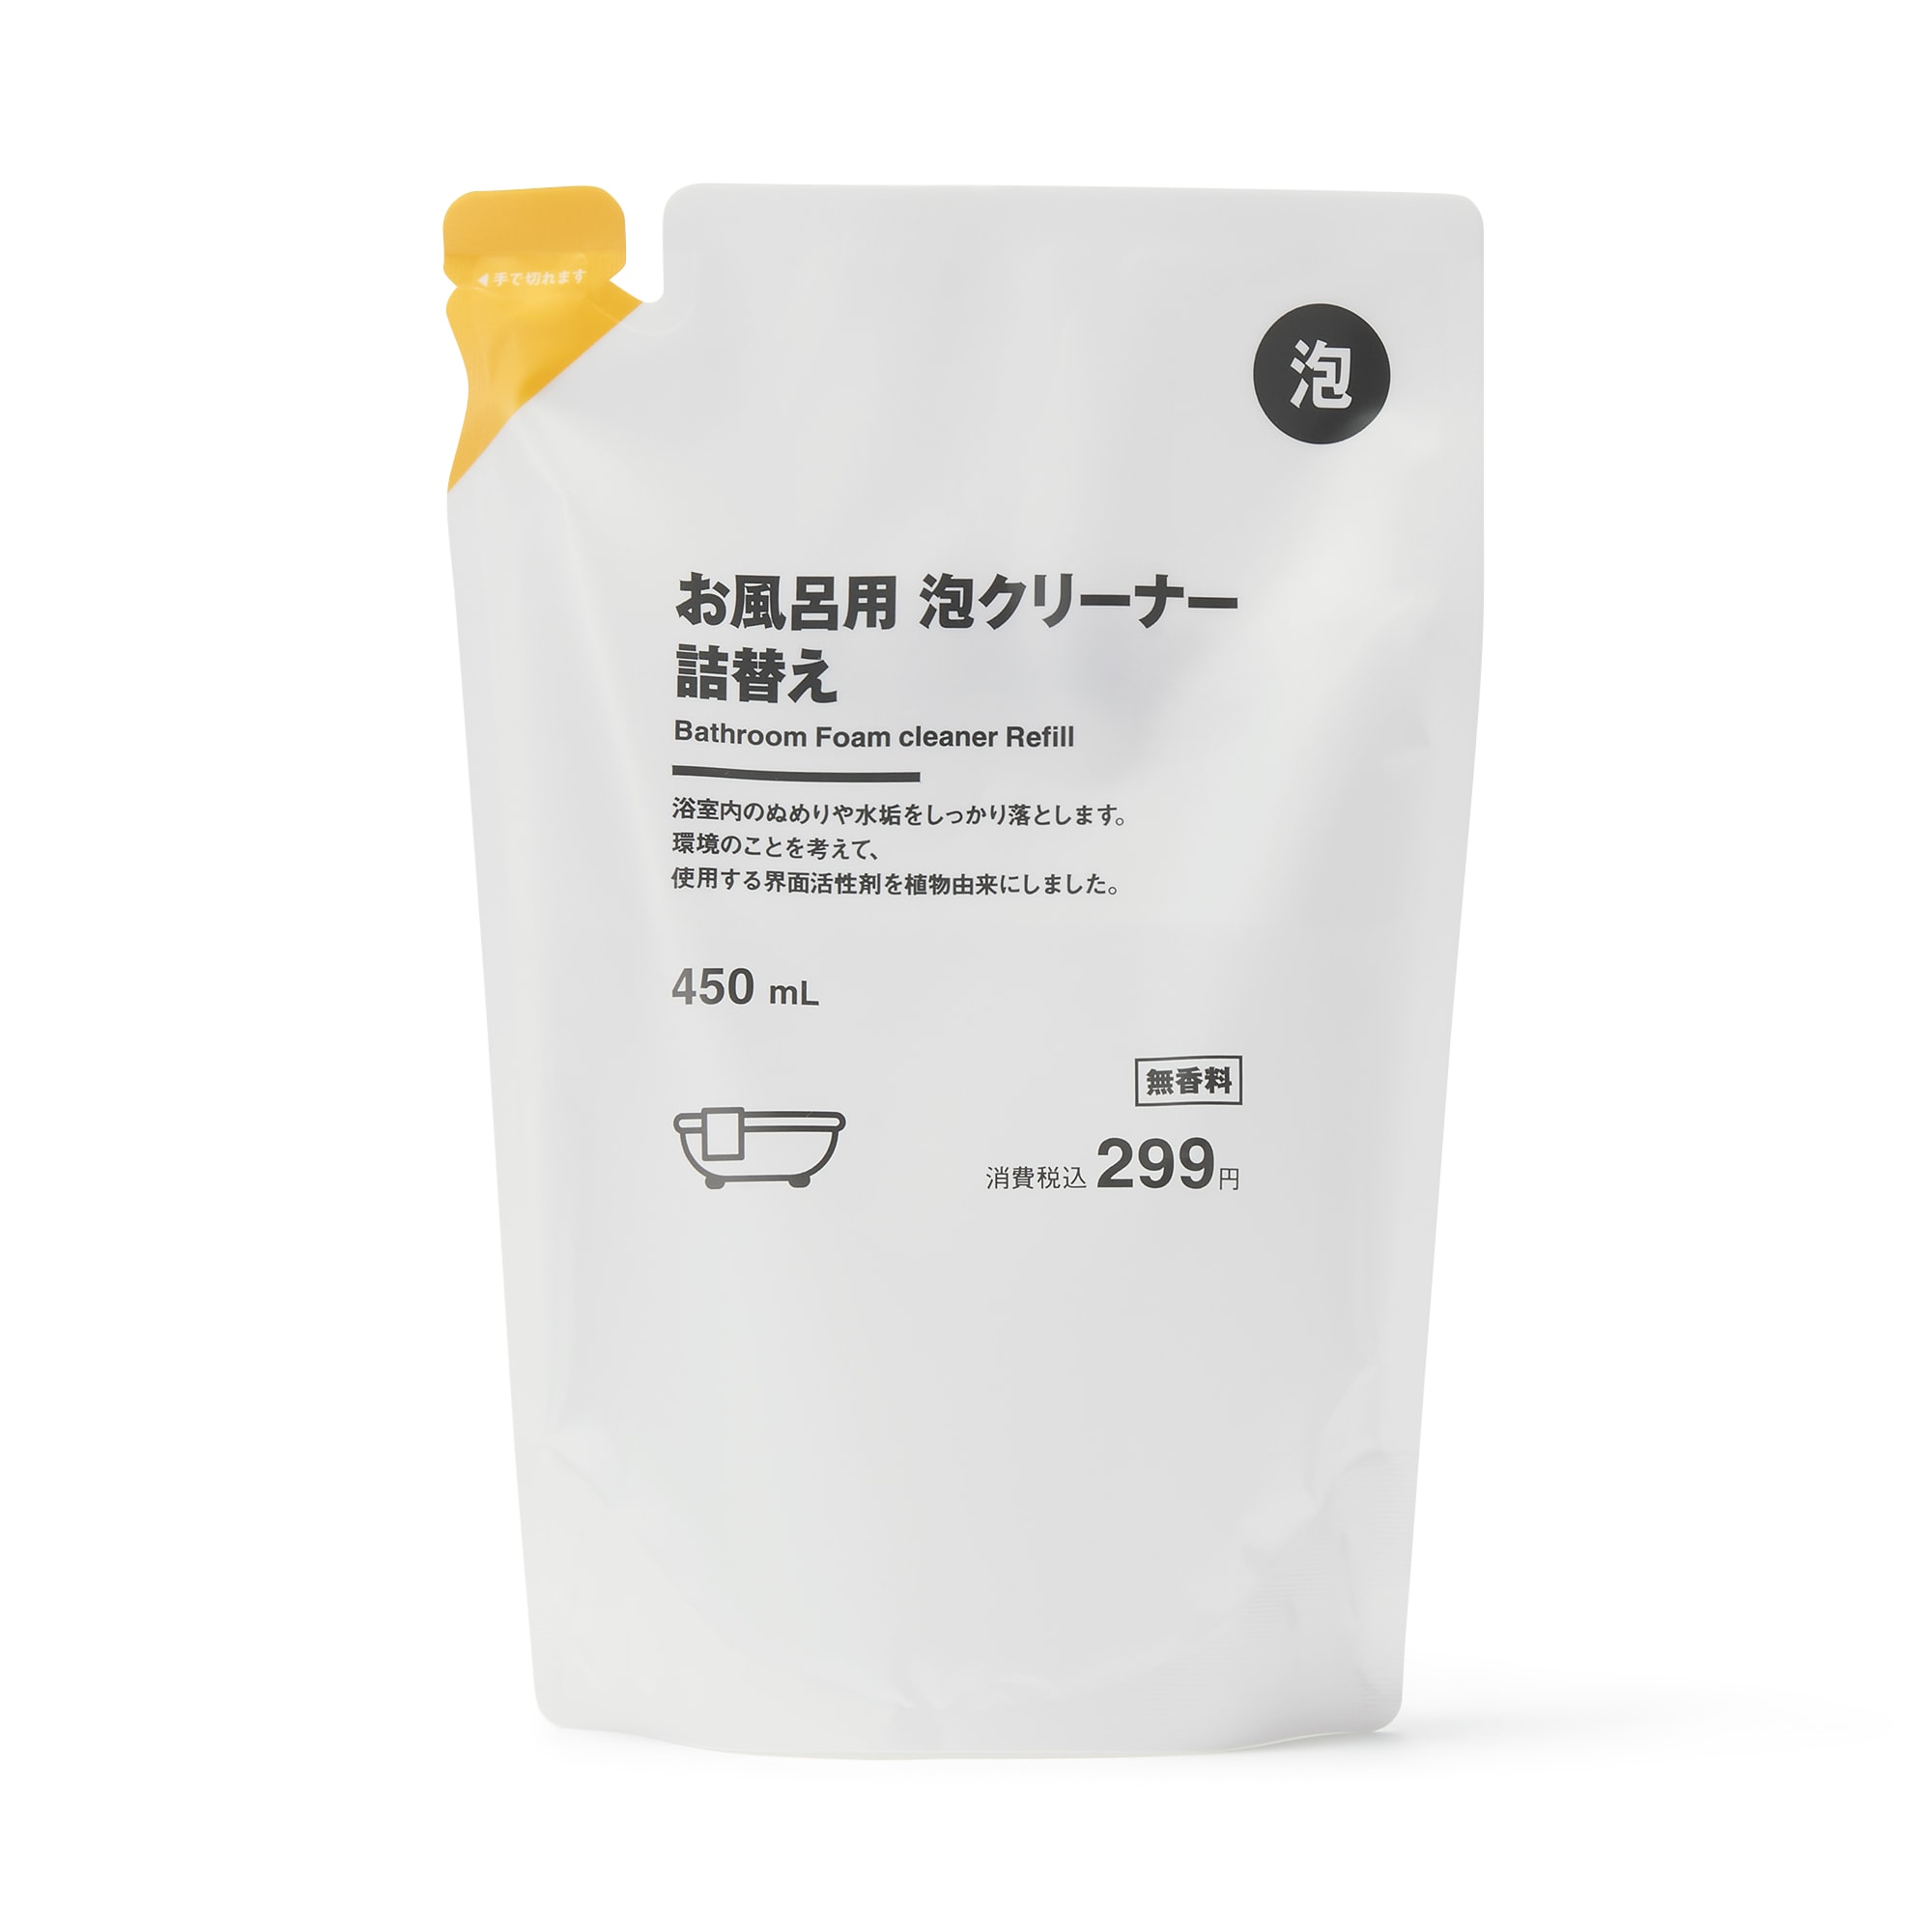 무인양품 일본 욕실 세제 욕조 거품 클리너 리필용 450ml